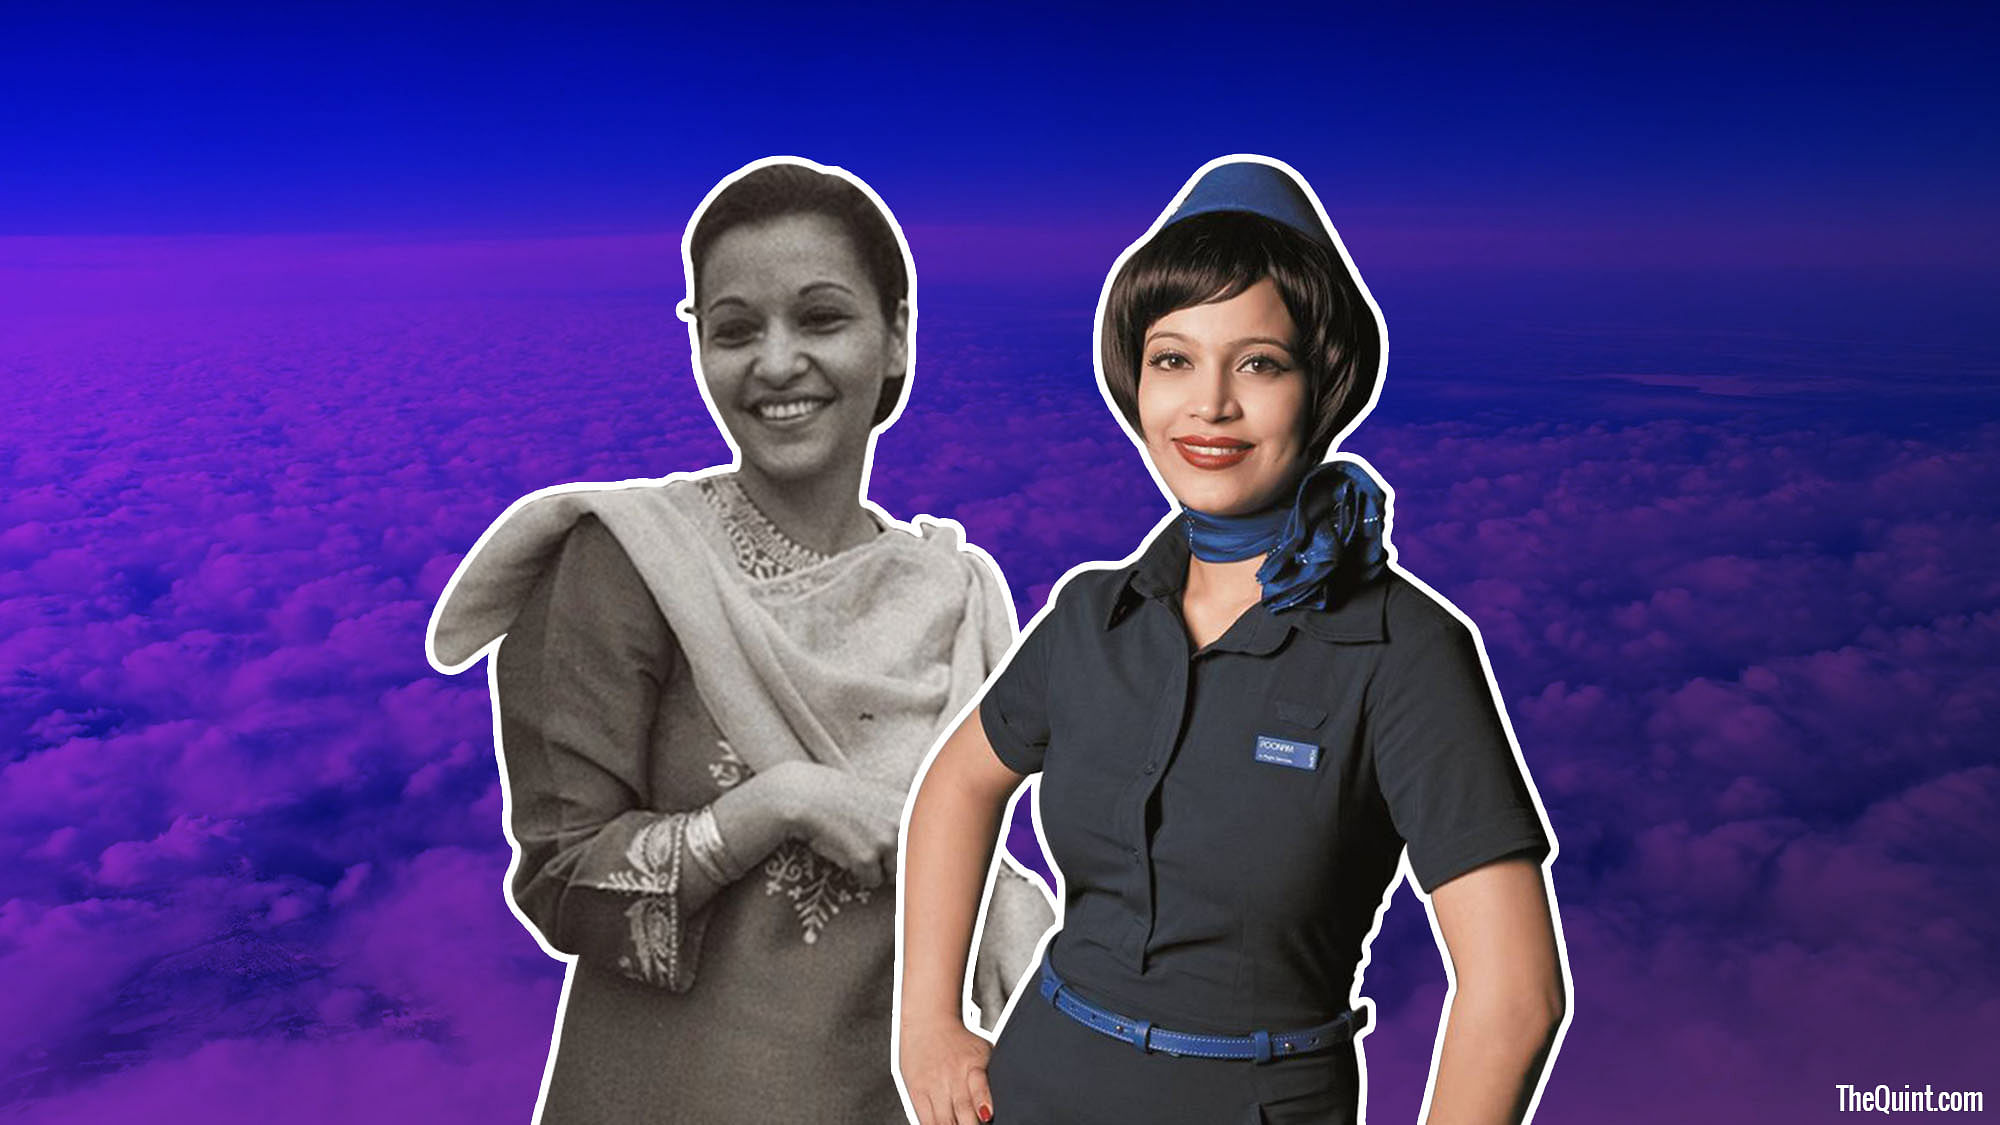 Air hostess uniforms through the decades (Photo:<b> The Quint</b>)